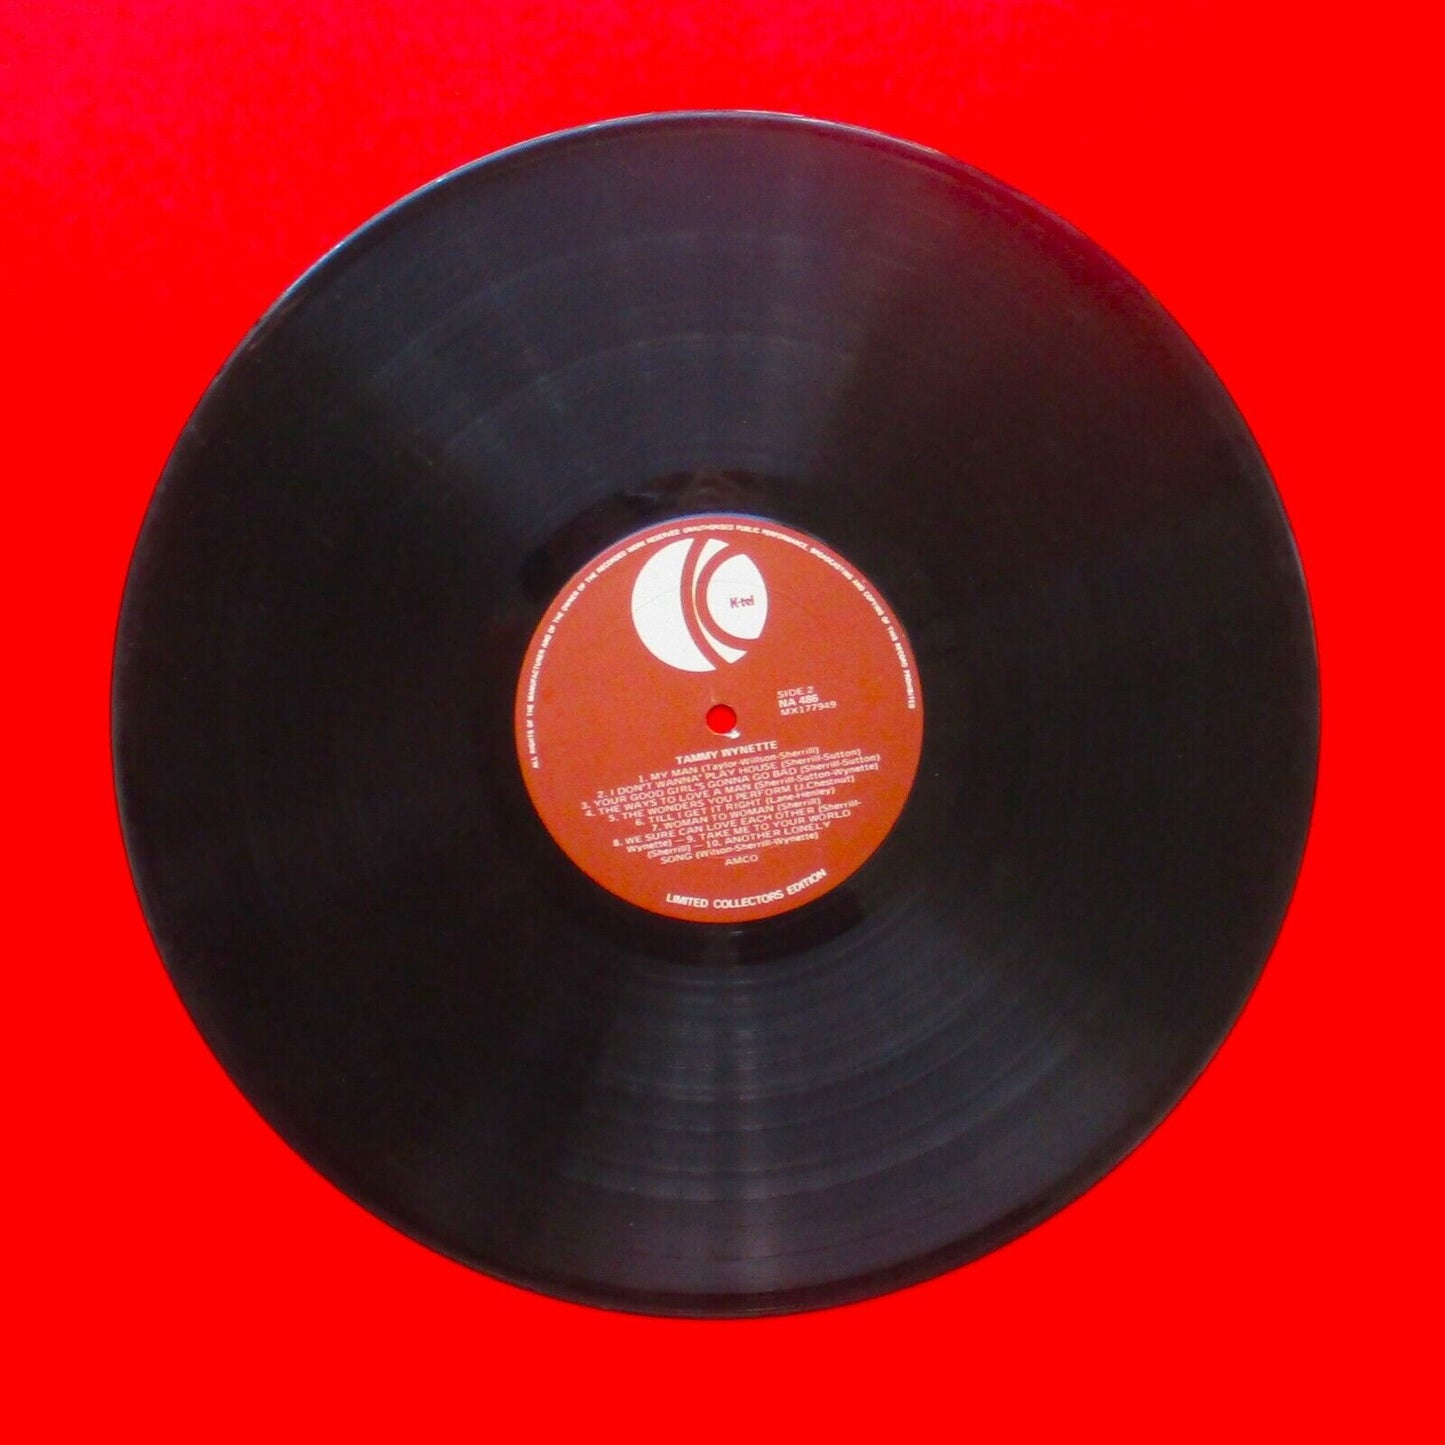 K-Tel Presents Tammy 20 Greatest Hits Of Tammy Wynette 1976 Vinyl LP